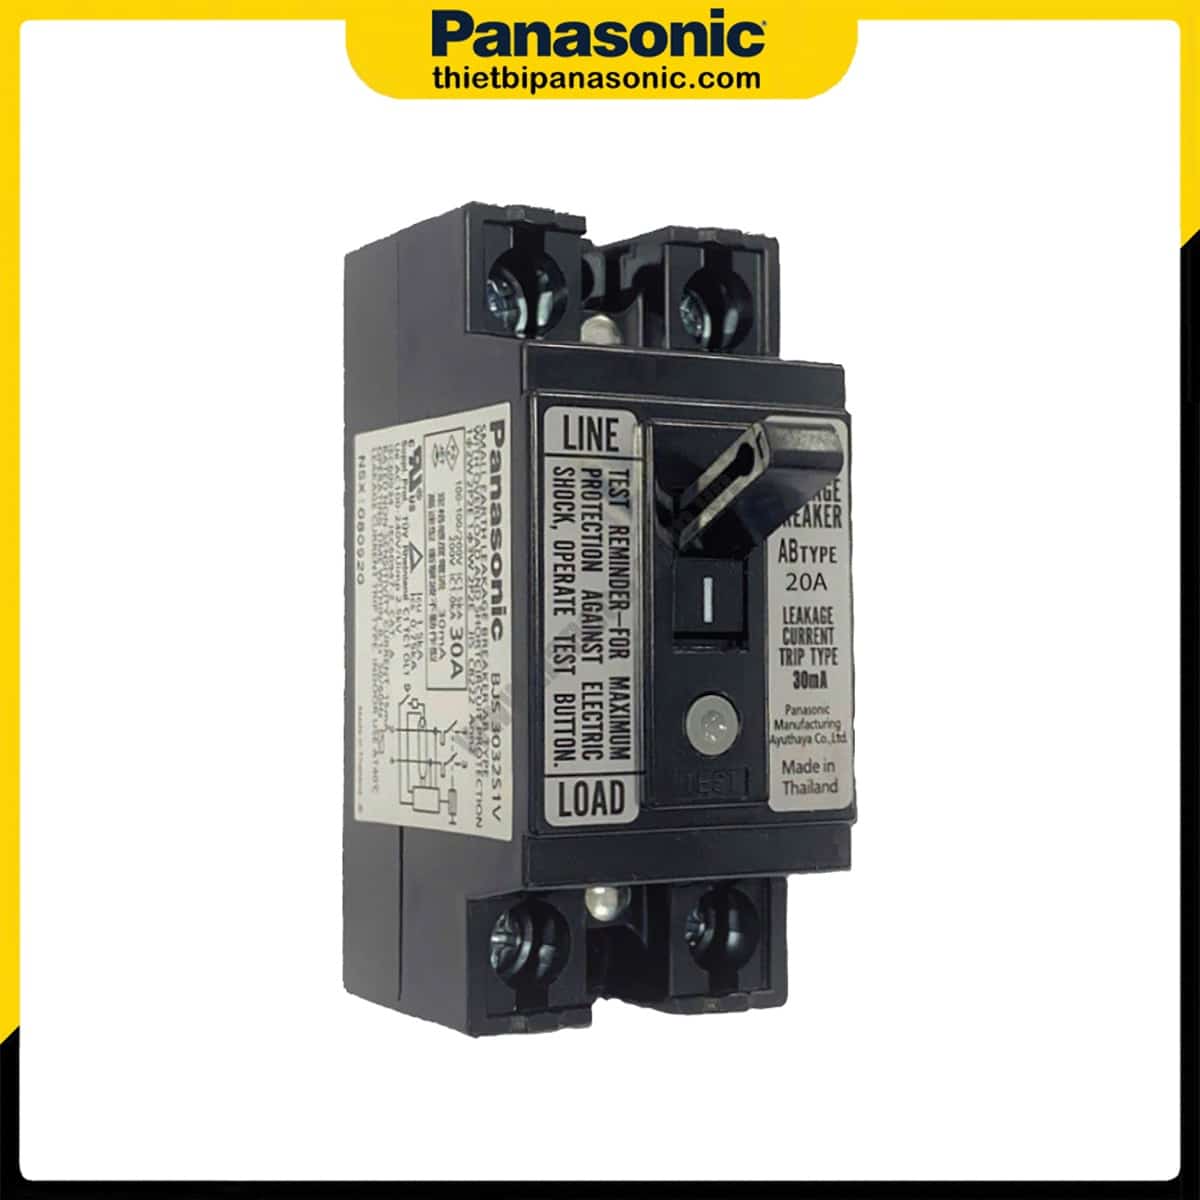 ELB Panasonic BJS2032S1V 20A 1.5kA 30mA đạt tiêu chuẩn IEC được sản xuất tại Thái Lan